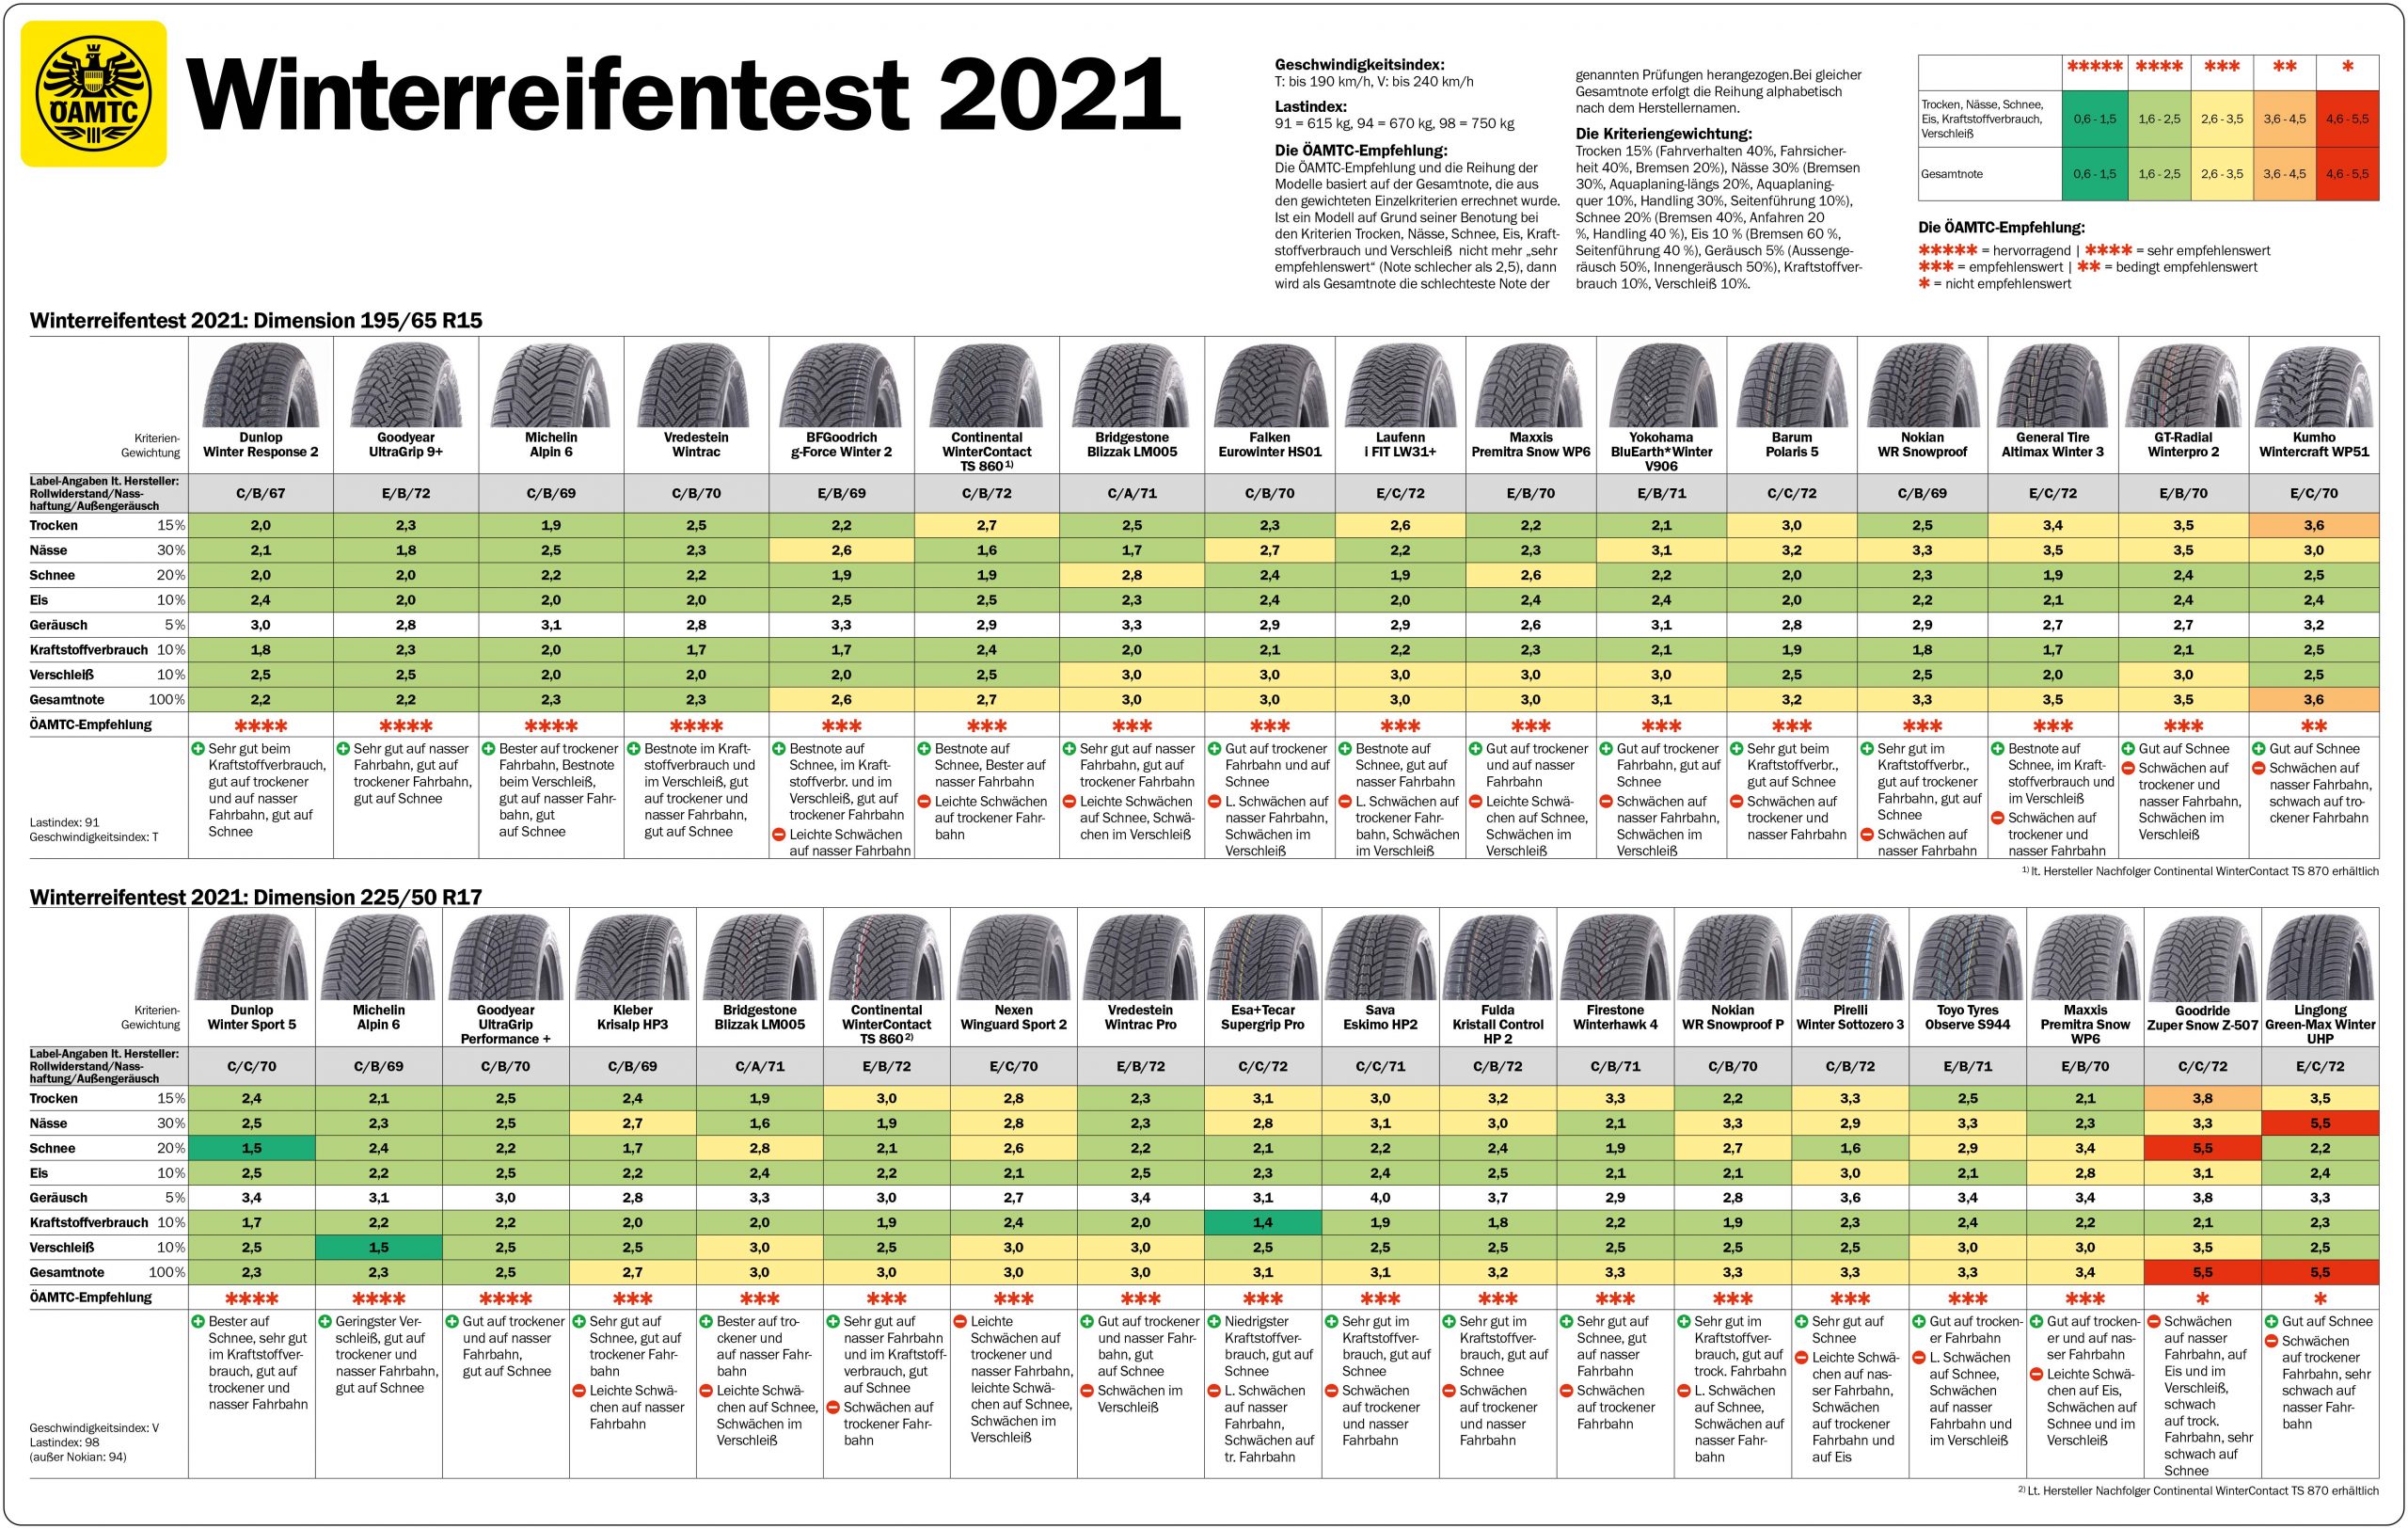 Winterreifen-Test 2021: Alle Ergebnisse im Überblick